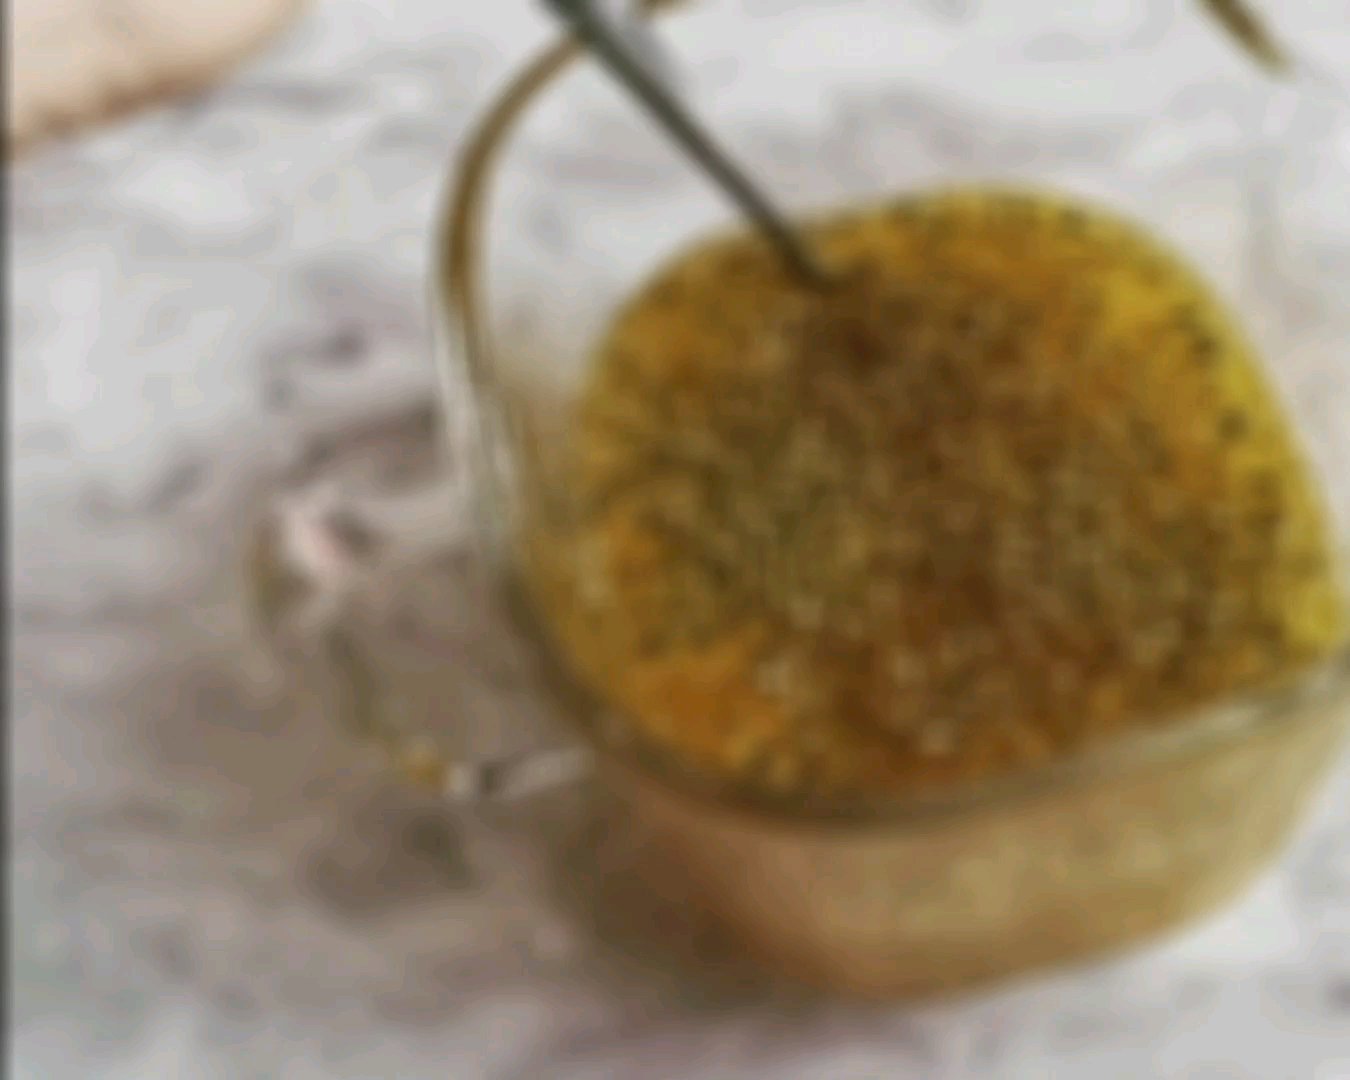 百香果柠檬蜂蜜水